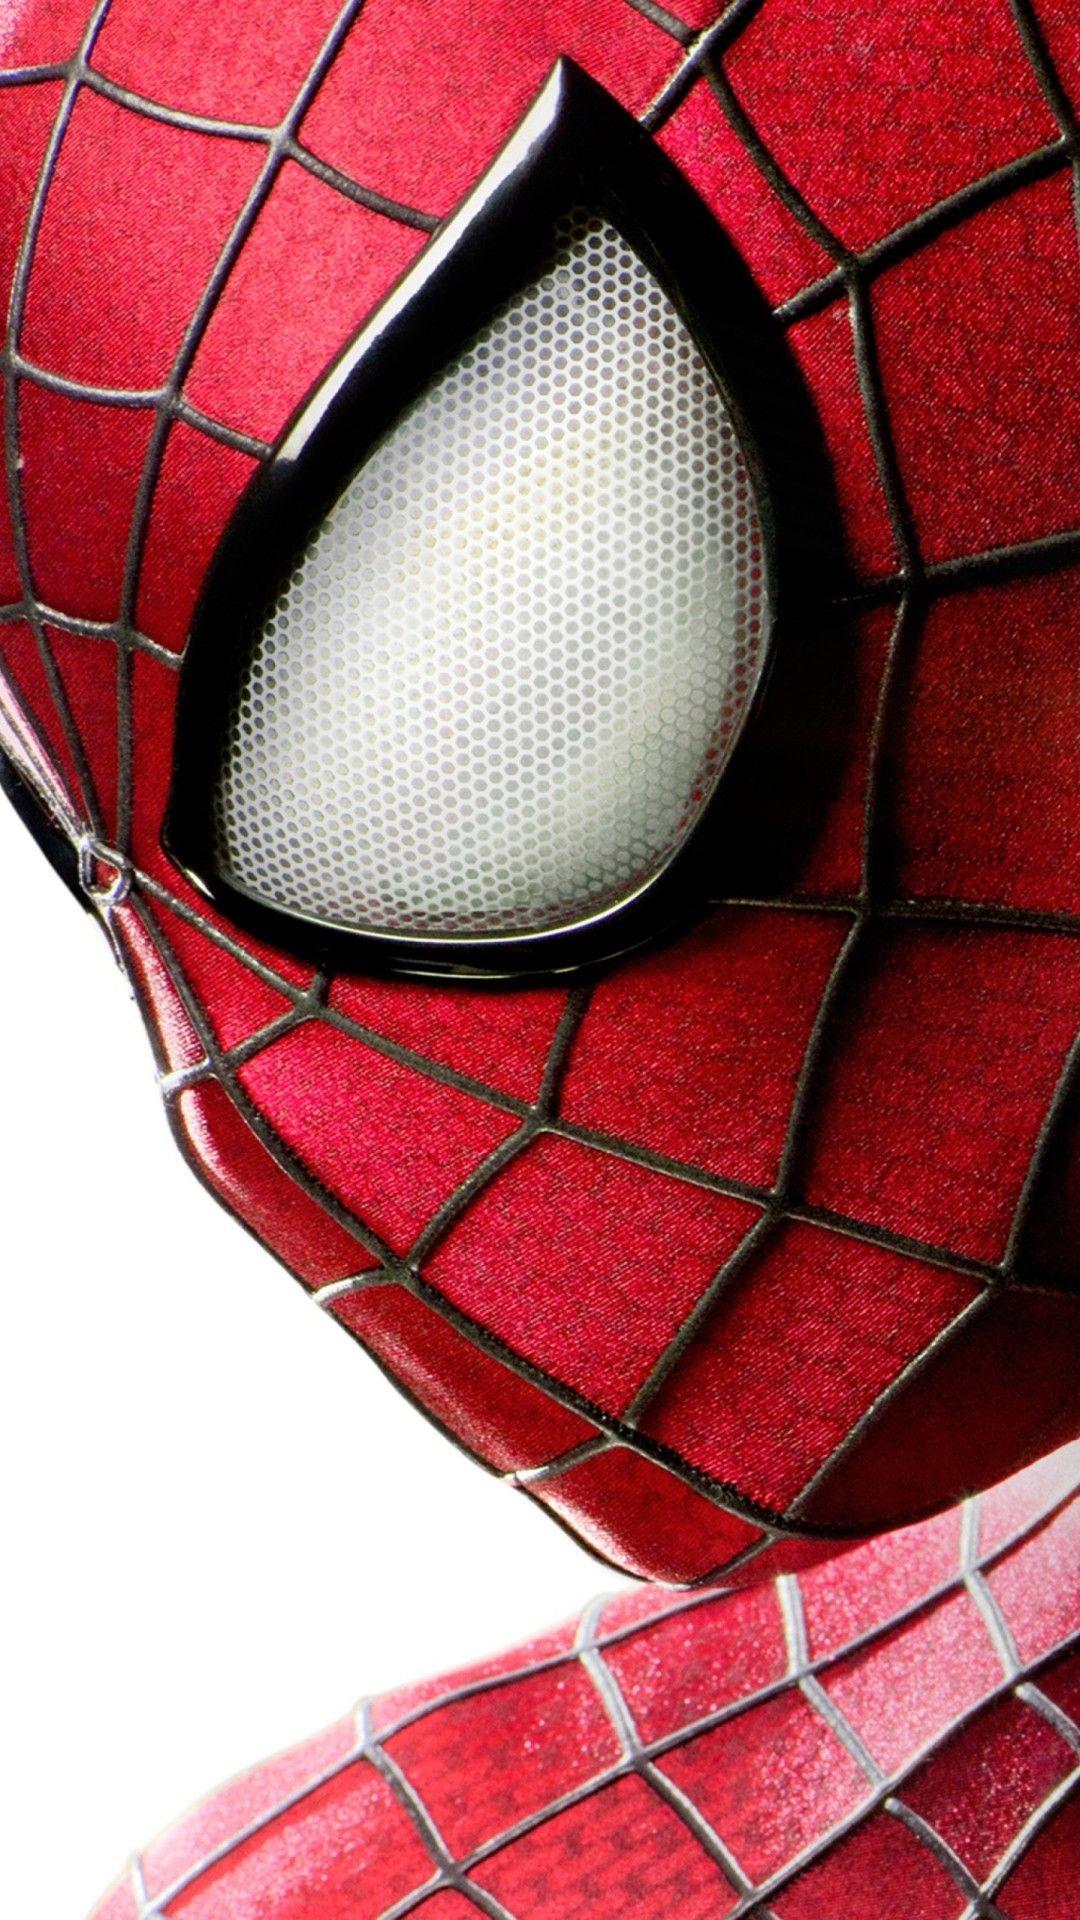 Bộ sưu tập độc đáo với hơn 999 hình ảnh Spider Man đẹp mắt - Trọn bộ 4K